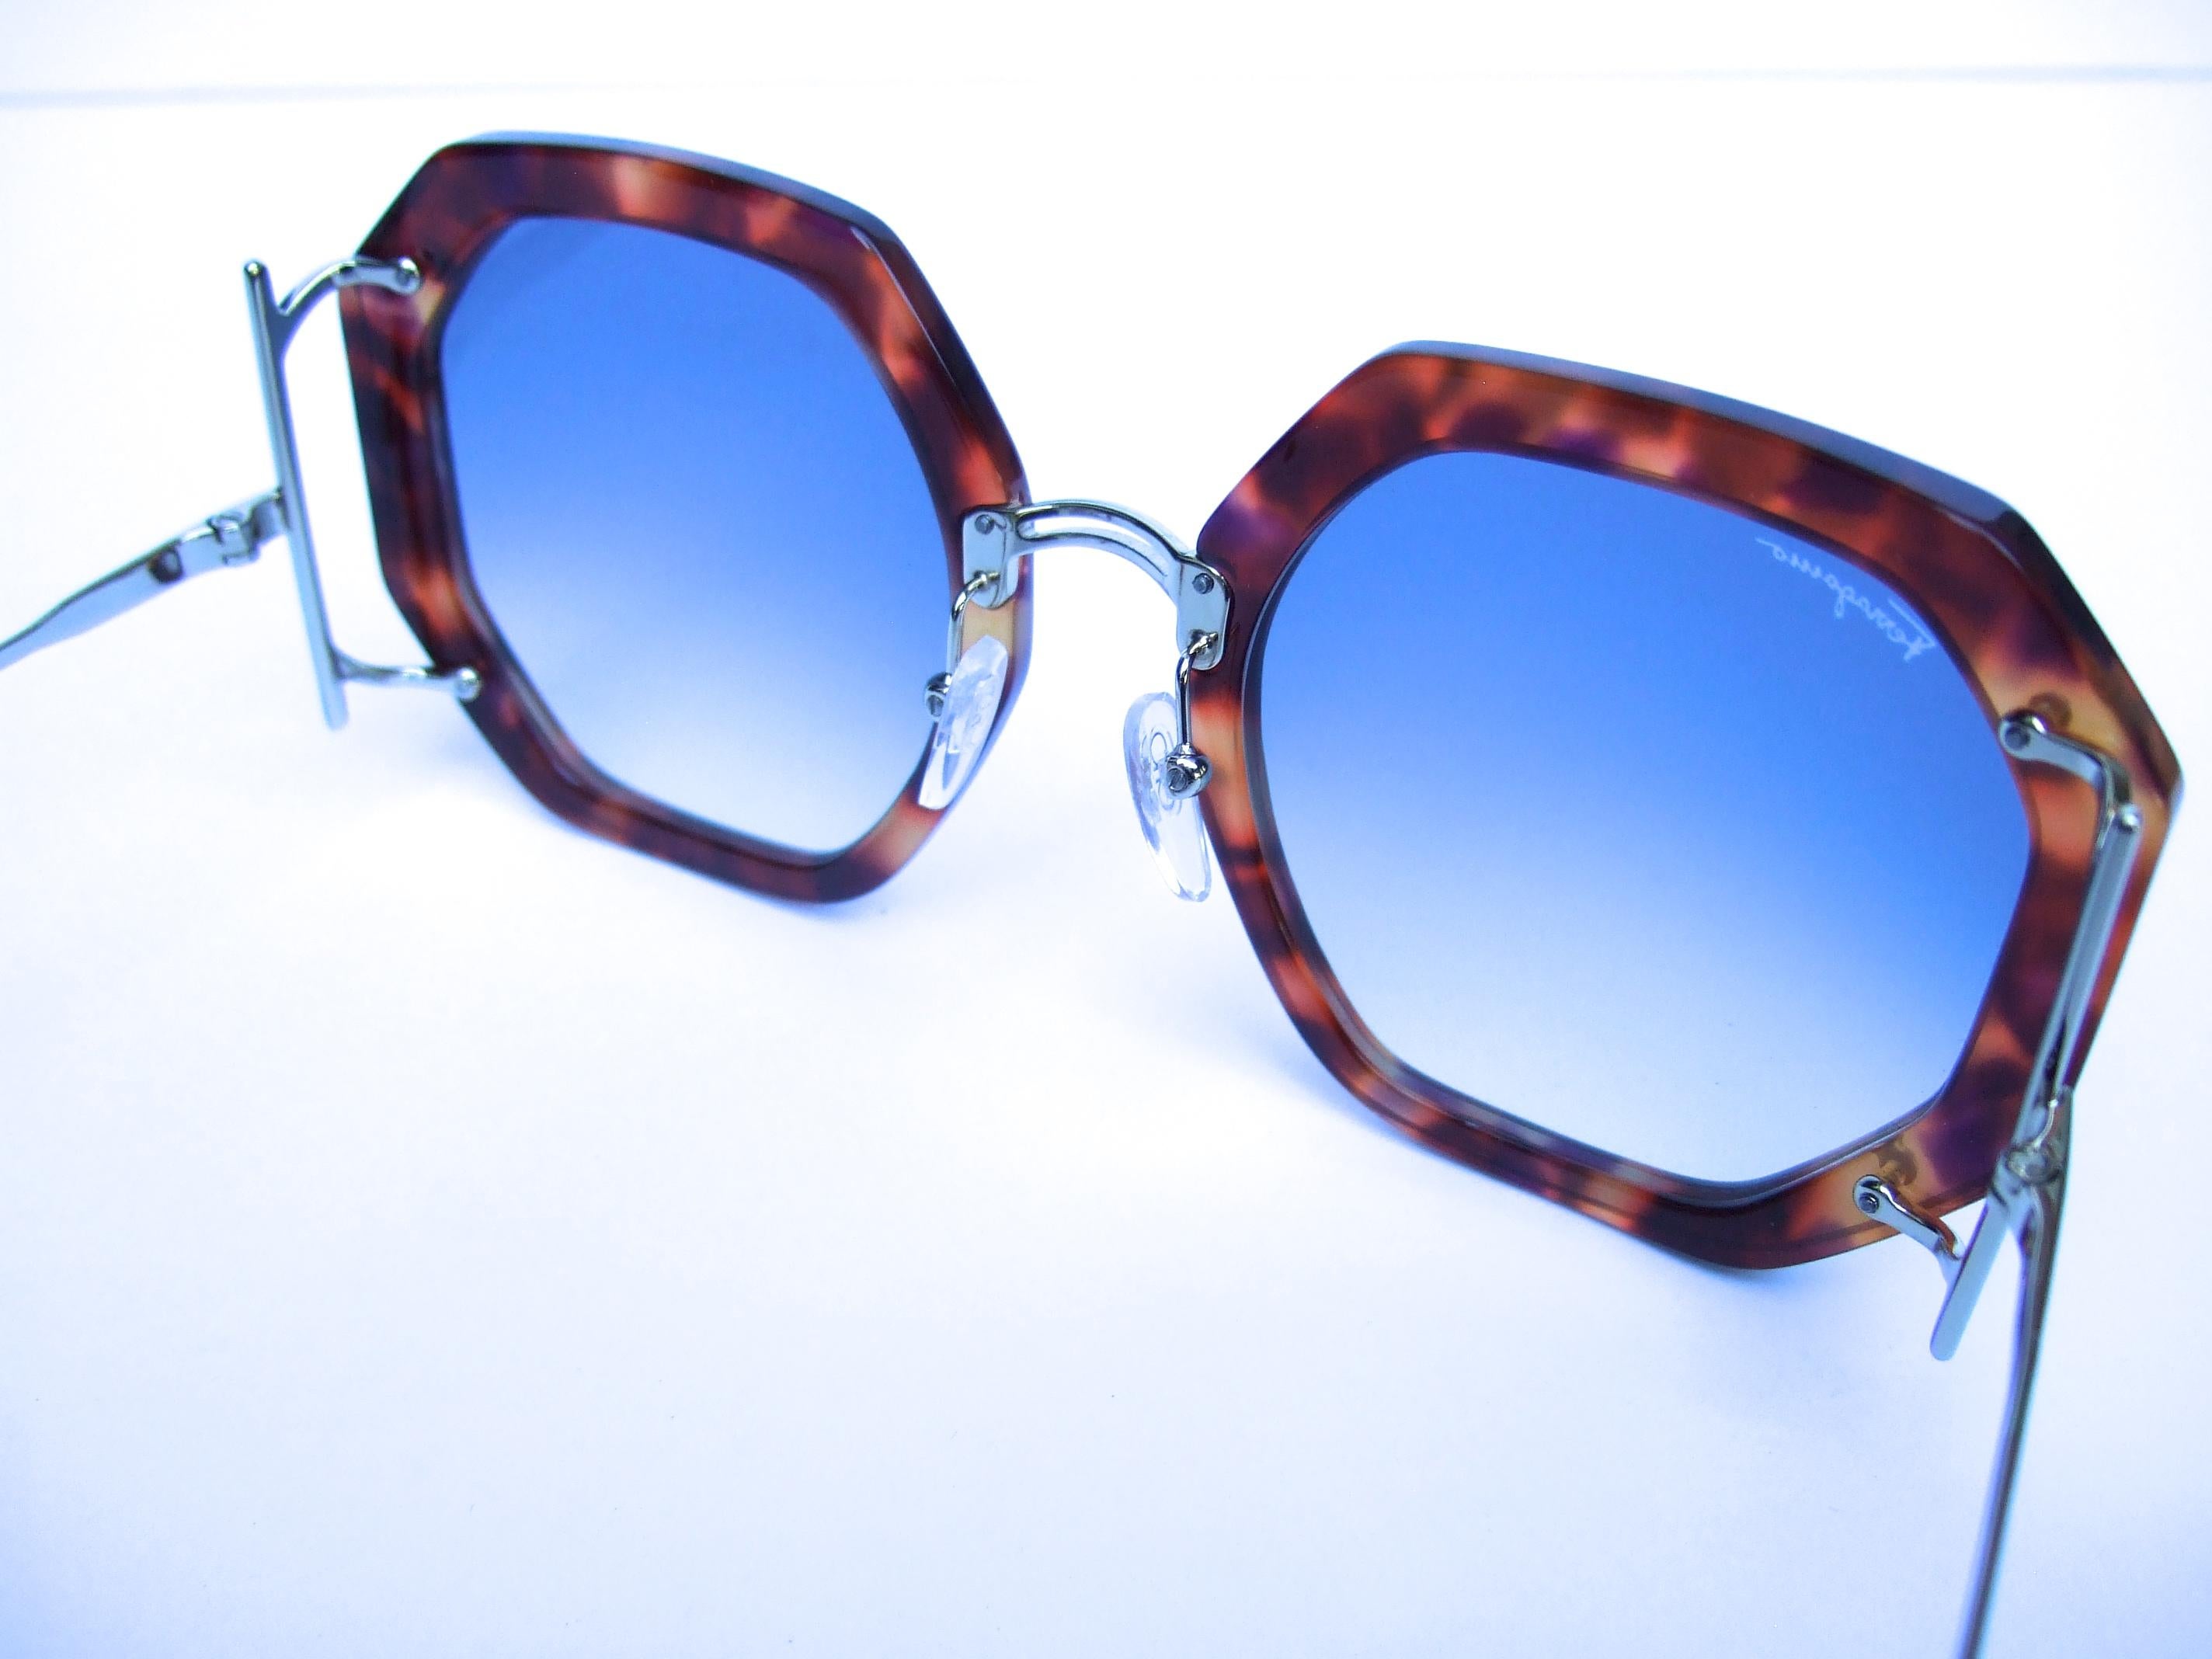 Salvatore Ferragamo Italian Women's Tortoise Shell Sunglasses in Box c 21st c  For Sale 9